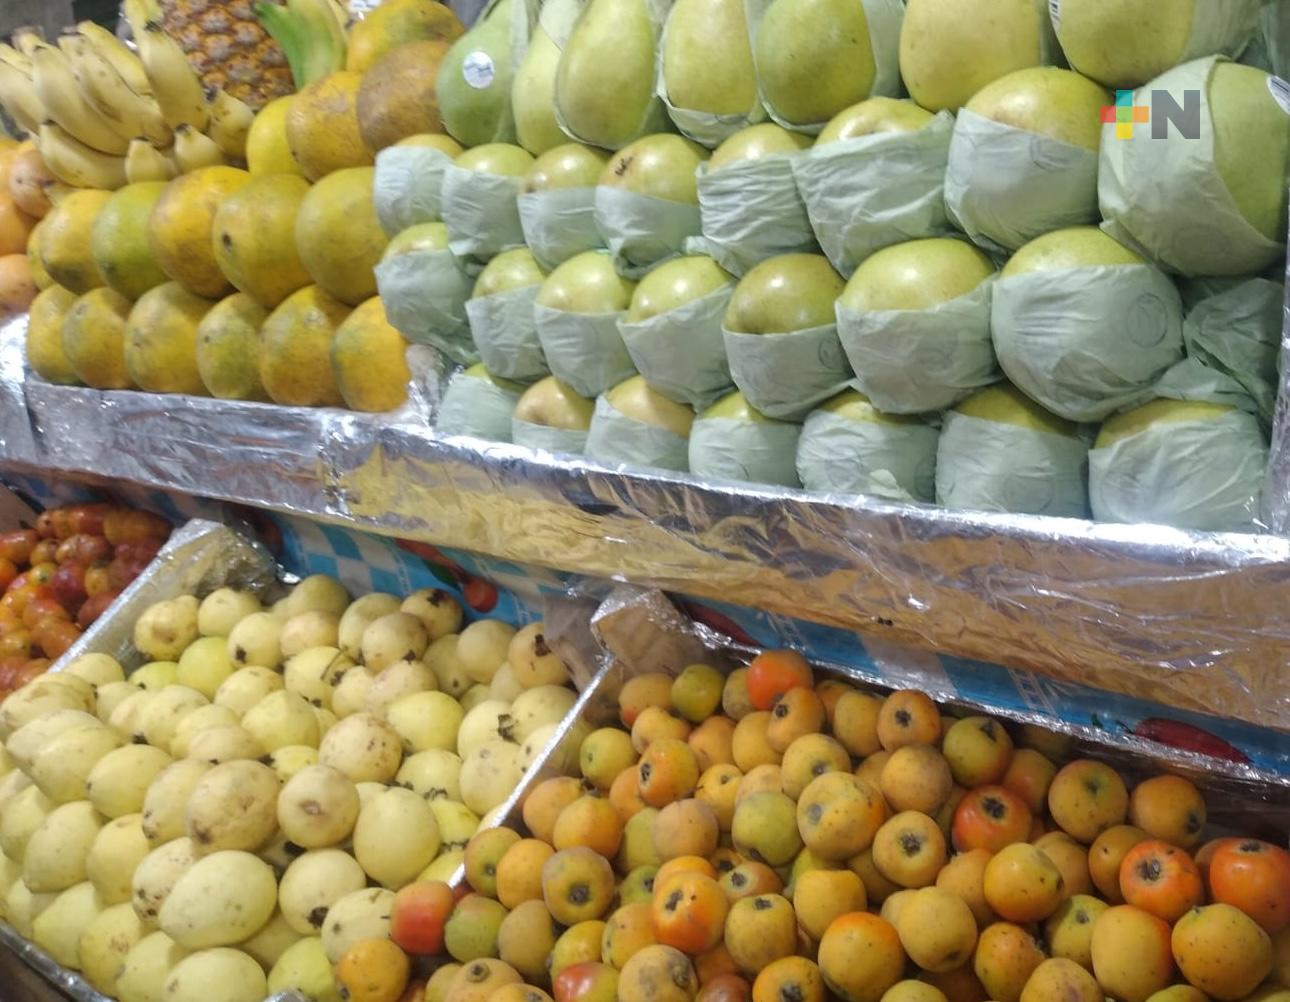 Comerciantes del mercado Zaragoza avizoran estabilidad en precio de fruta y verdura